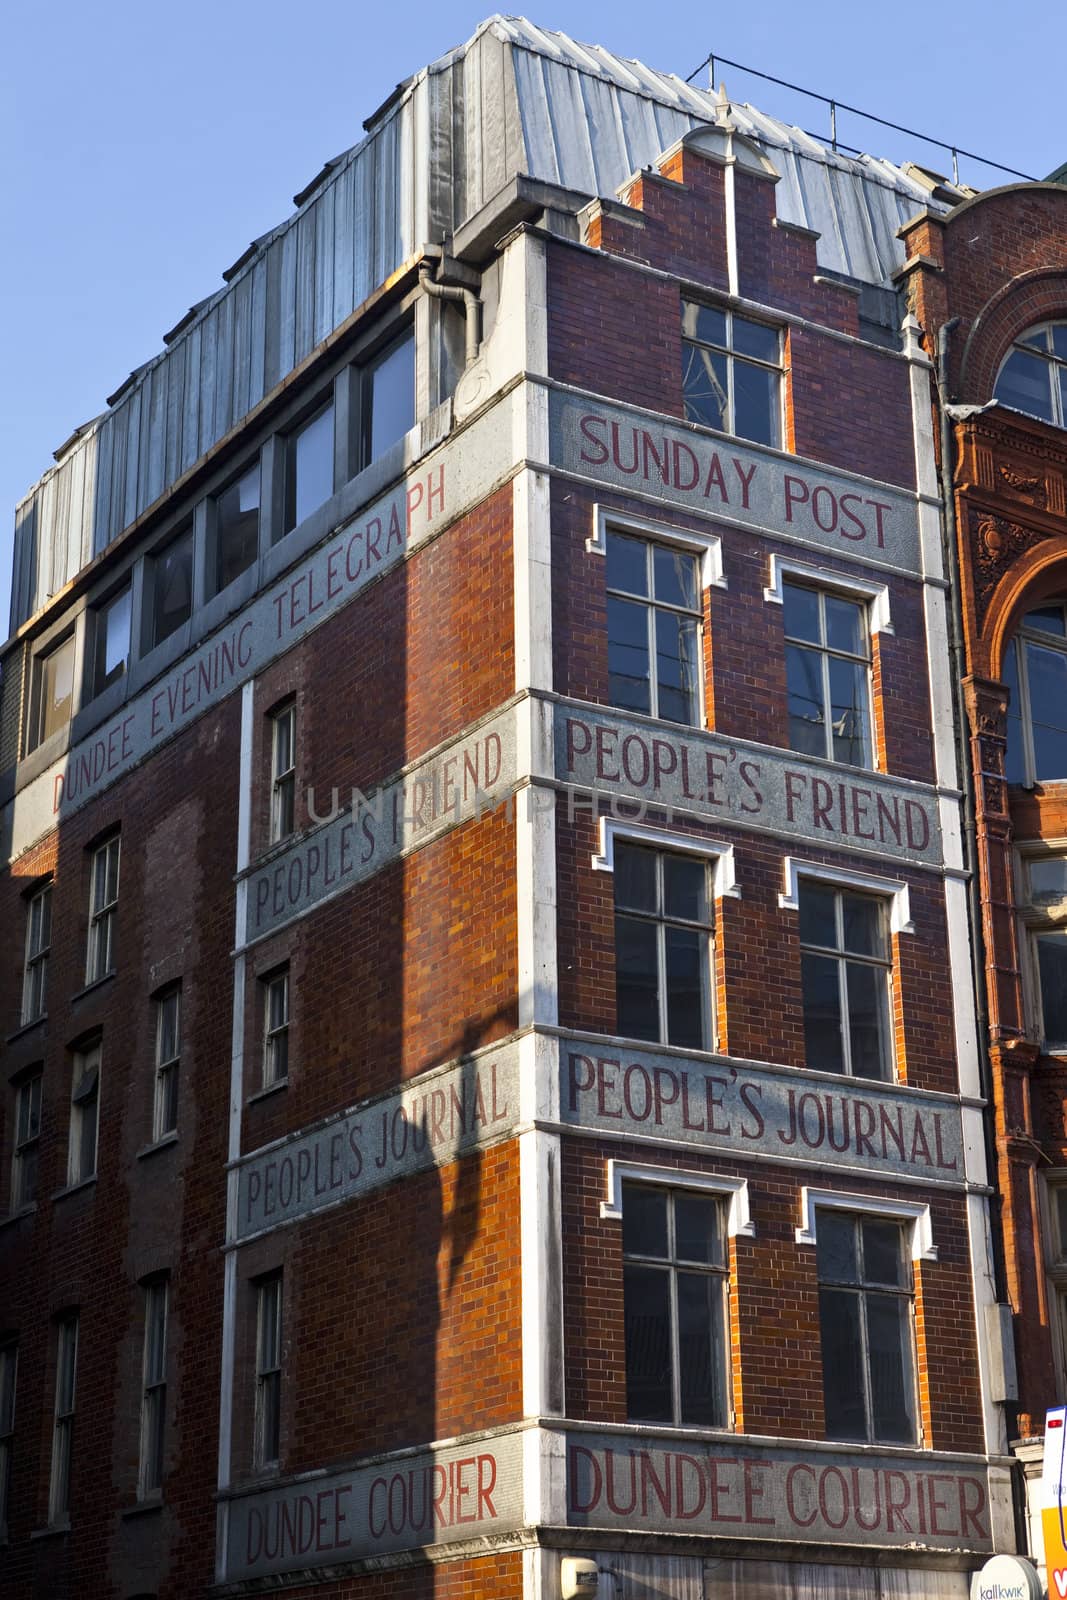 Old Publishing Buildings on Fleet Street in London.